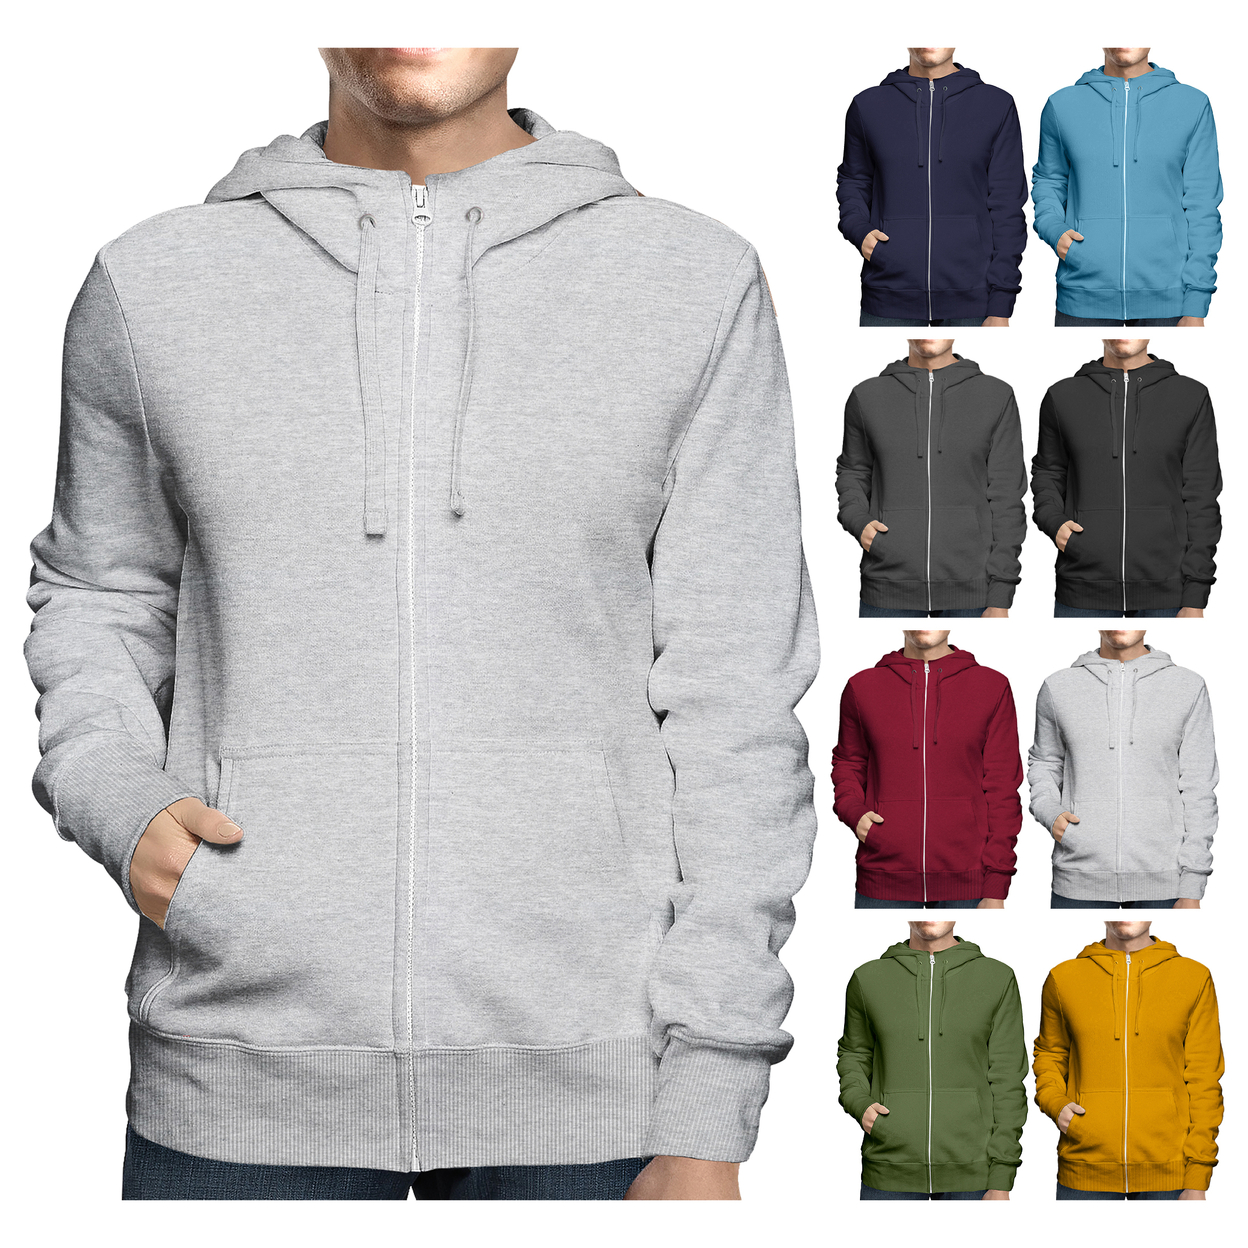 2-Pack: Men's Winter Warm Soft Full Zip-Up Fleece Lined Hoodie Sweatshirt - Black & Charcoal, Small